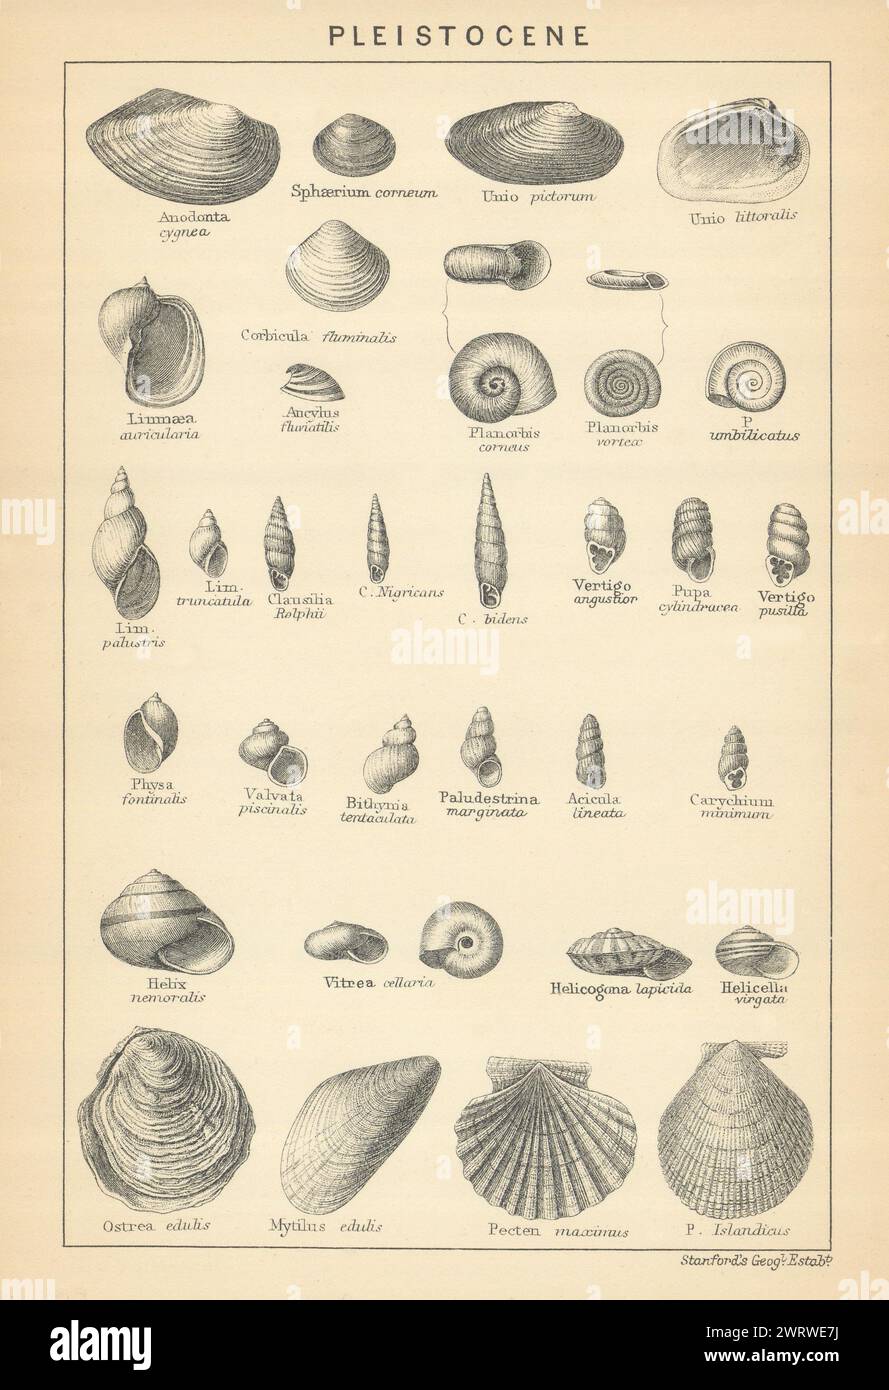 FÓSILES BRITÁNICOS. Pleistoceno - Depósitos marinos. STANFORD 1904 vieja impresión Foto de stock